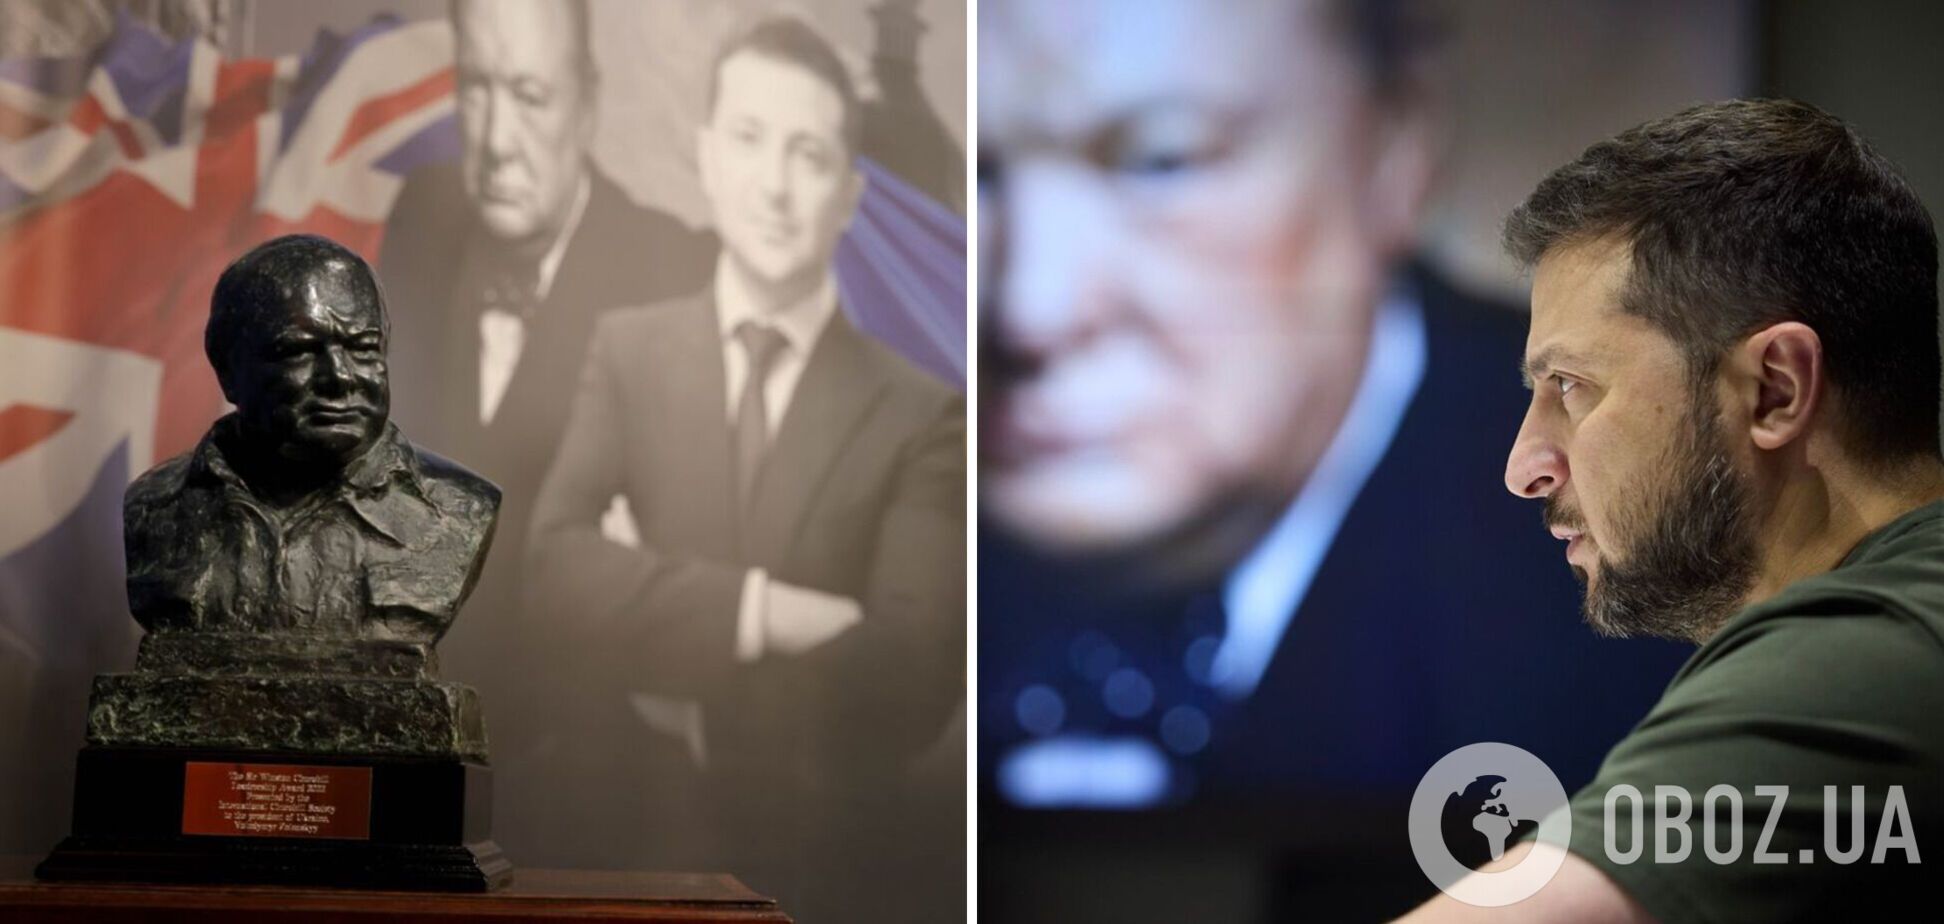 Зеленский получил премию Черчилля за лидерство и поблагодарил украинцев, поднявшихся на защиту свободы от тирании. Фото и видео